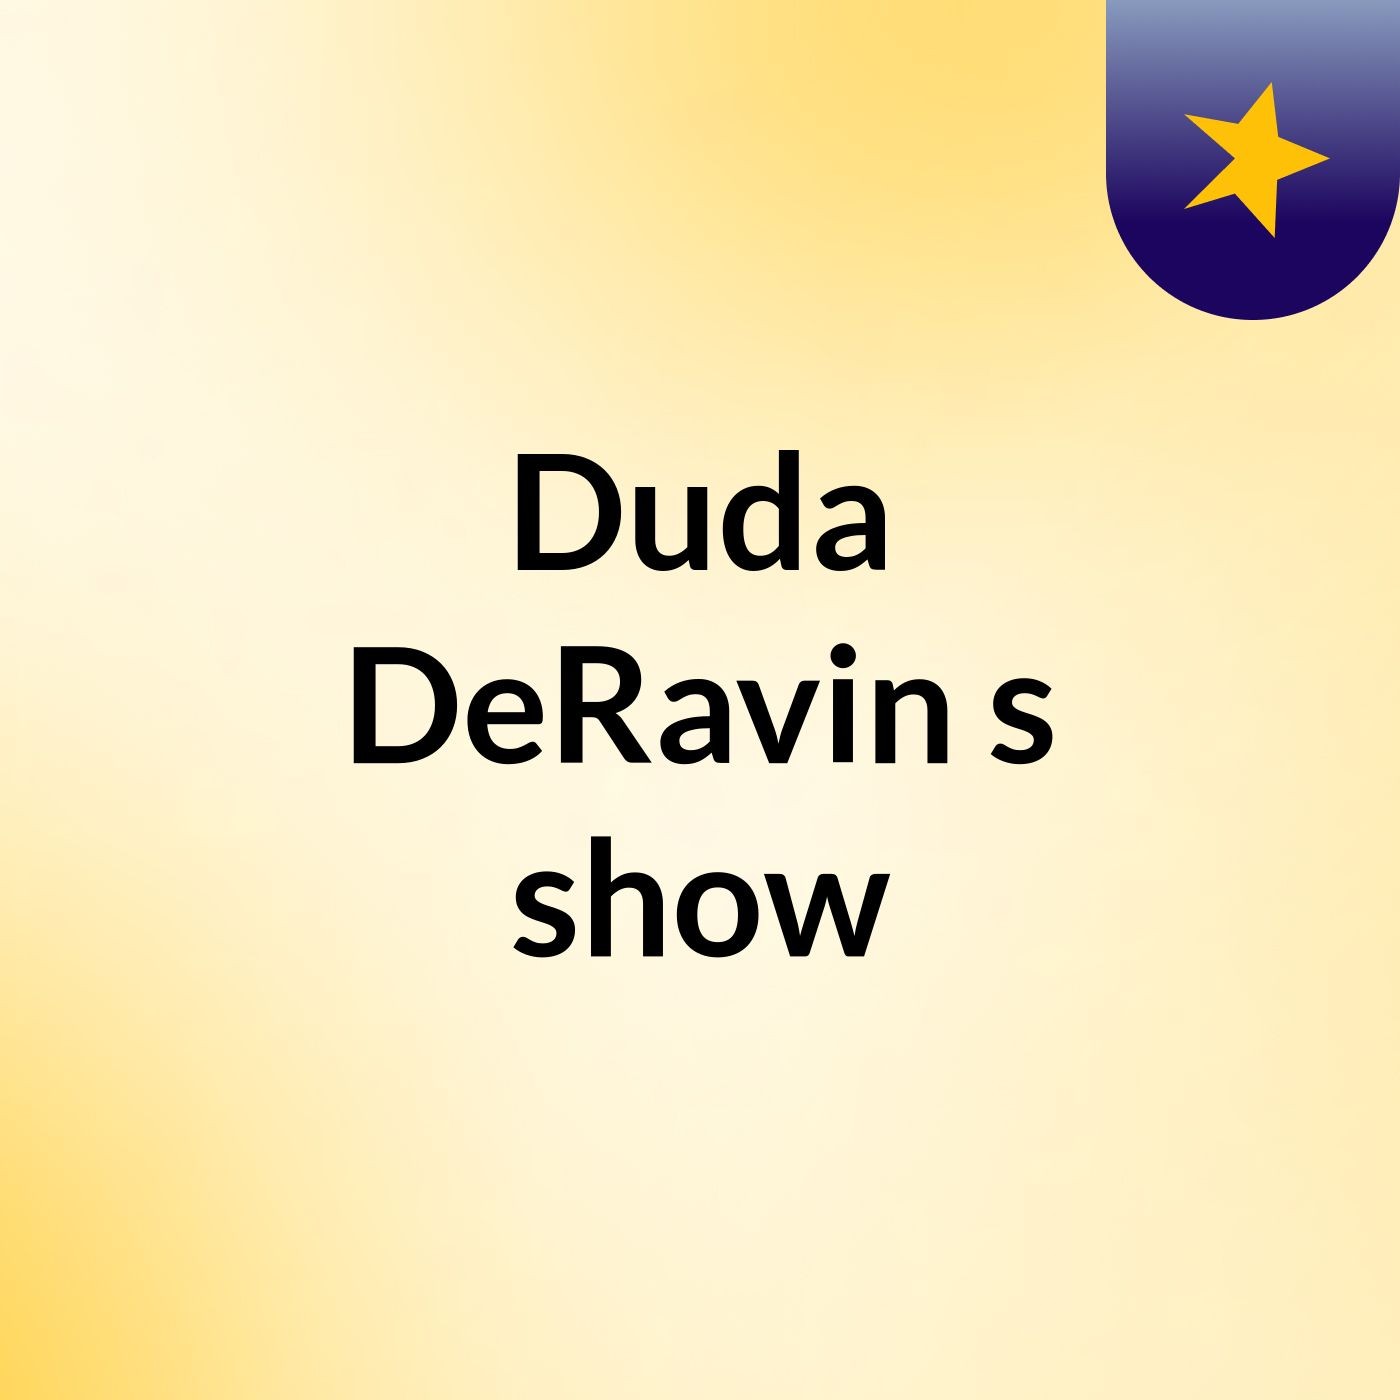 Duda DeRavin's show